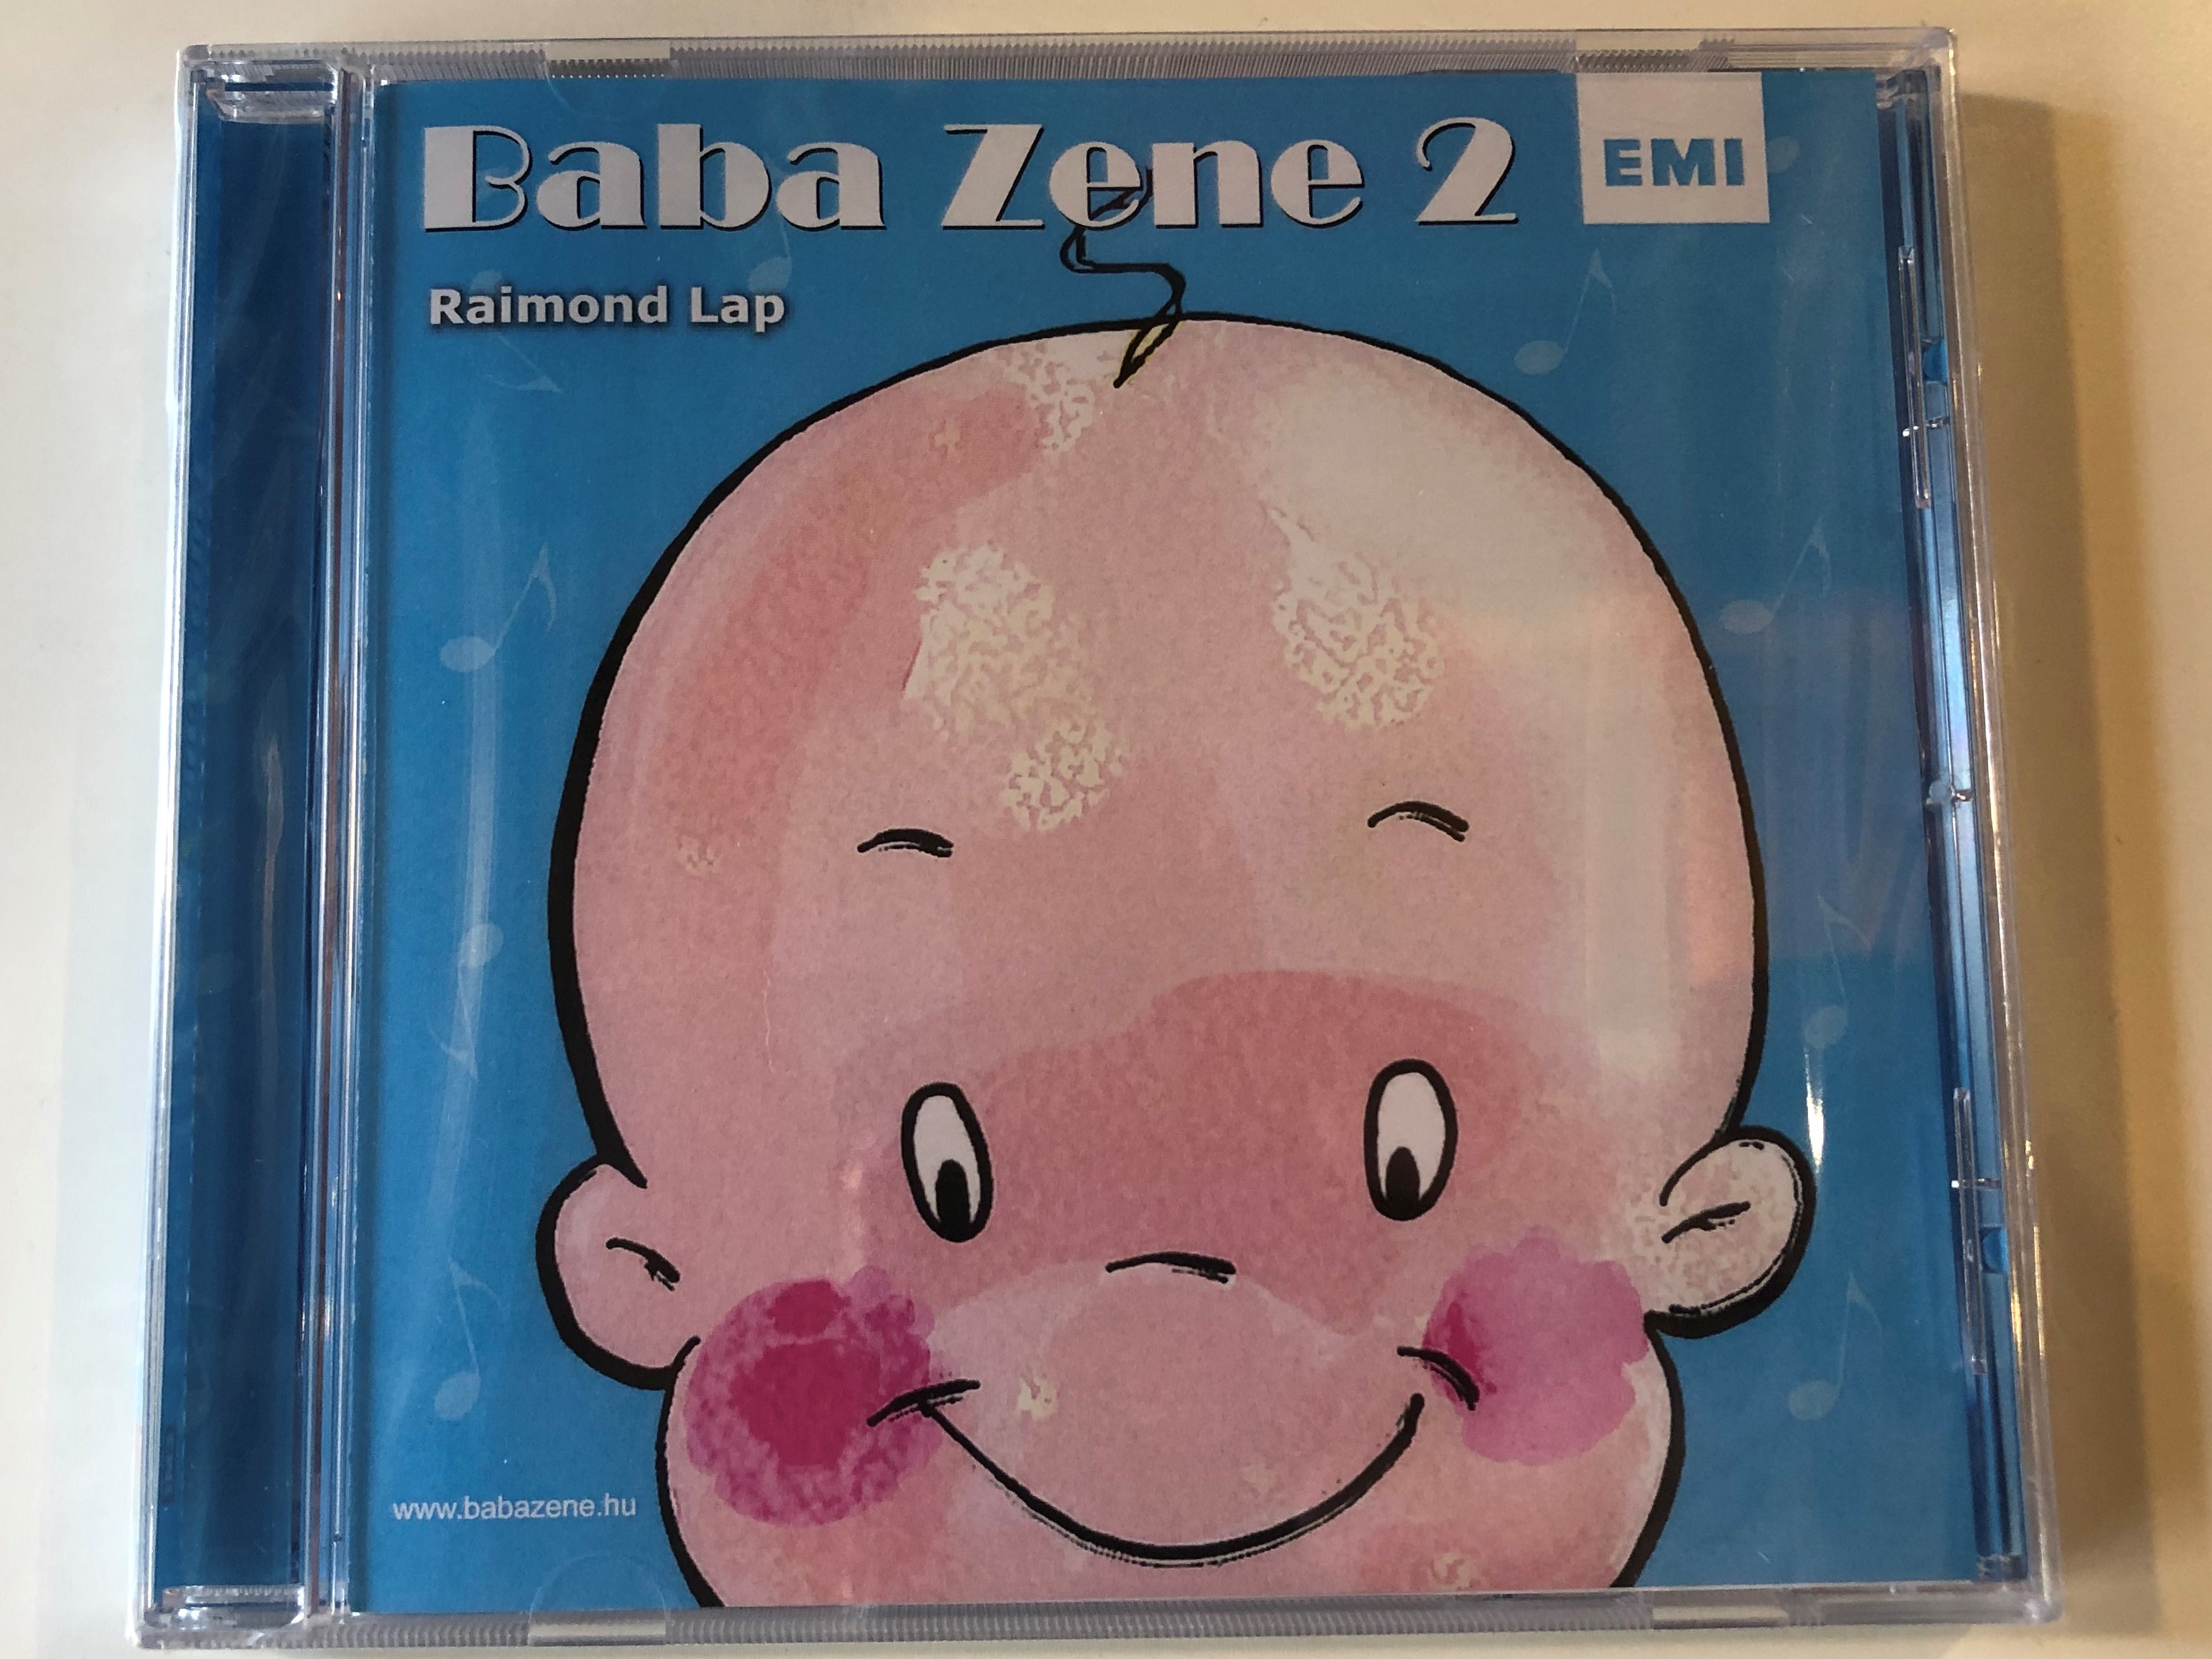 baba-zene-2.-raimond-lap-emi-audio-cd-0724387473324-1-.jpg